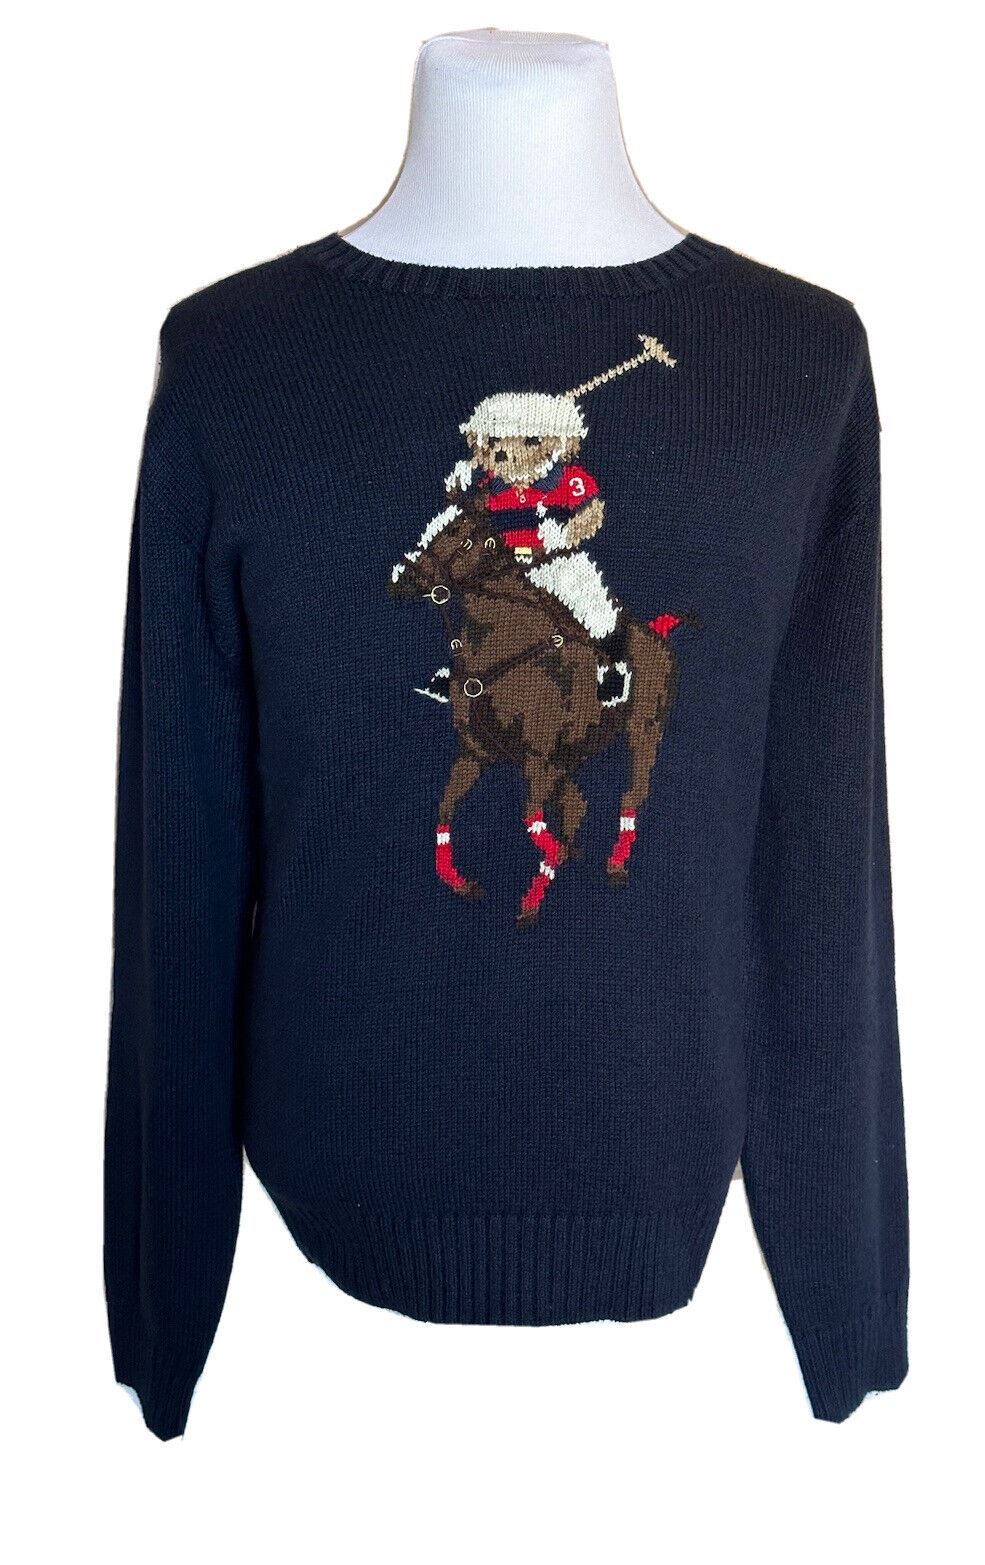 NWT $428 Polo Ralph Lauren Big Pony Bear Cotton/Linen Blue Sweater 2XLT